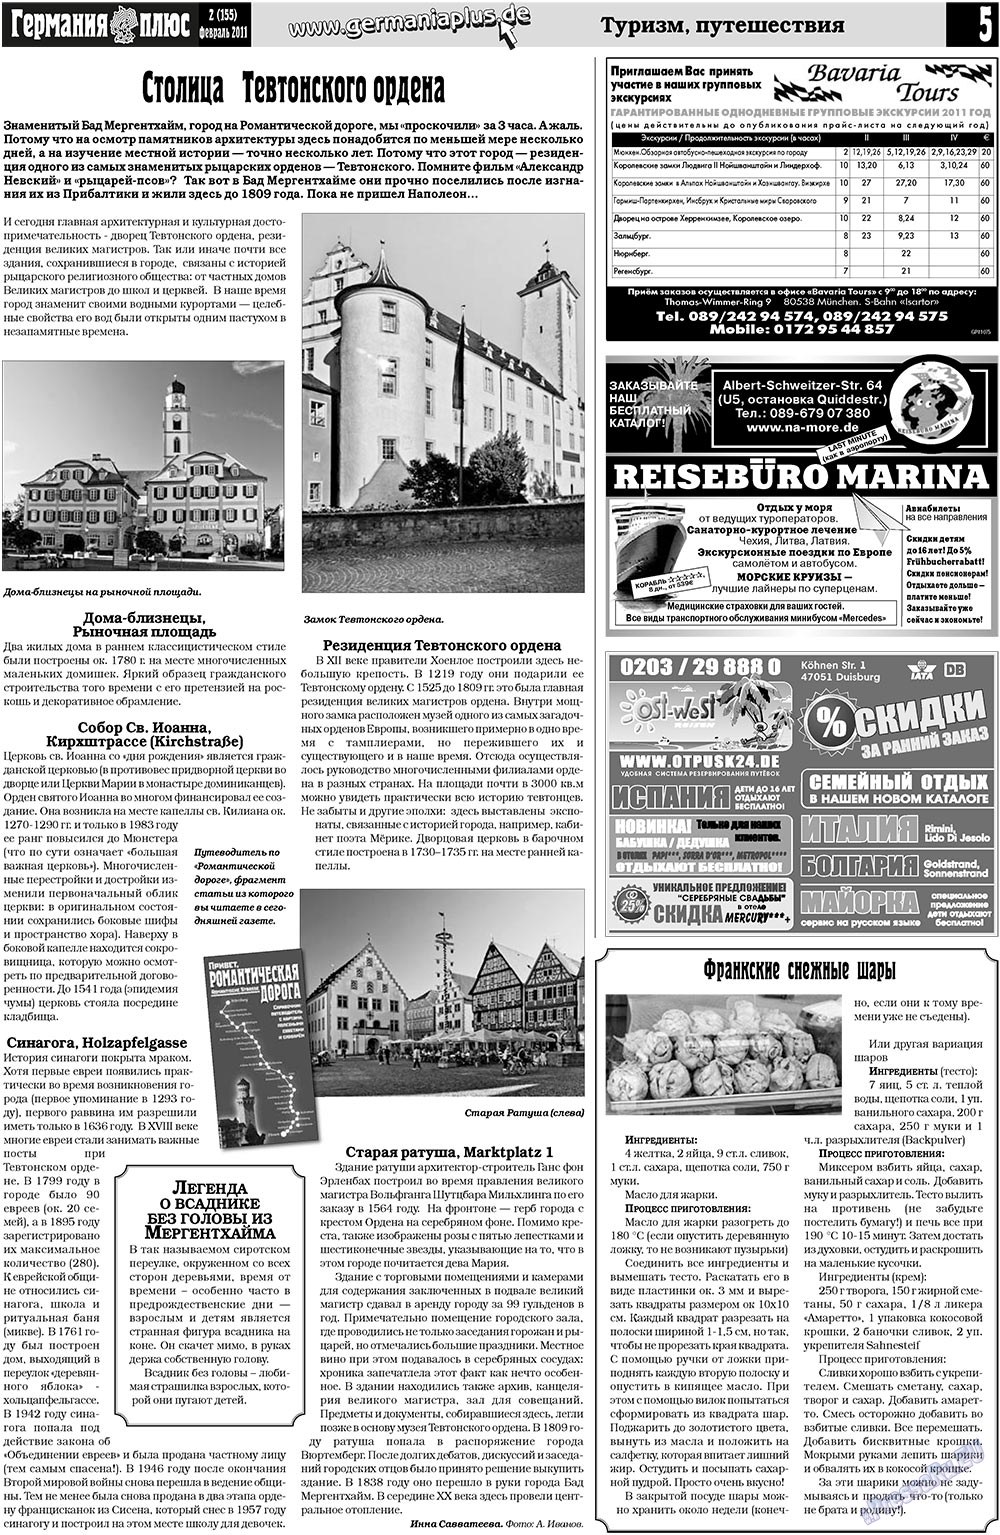 Германия плюс (газета). 2011 год, номер 2, стр. 5